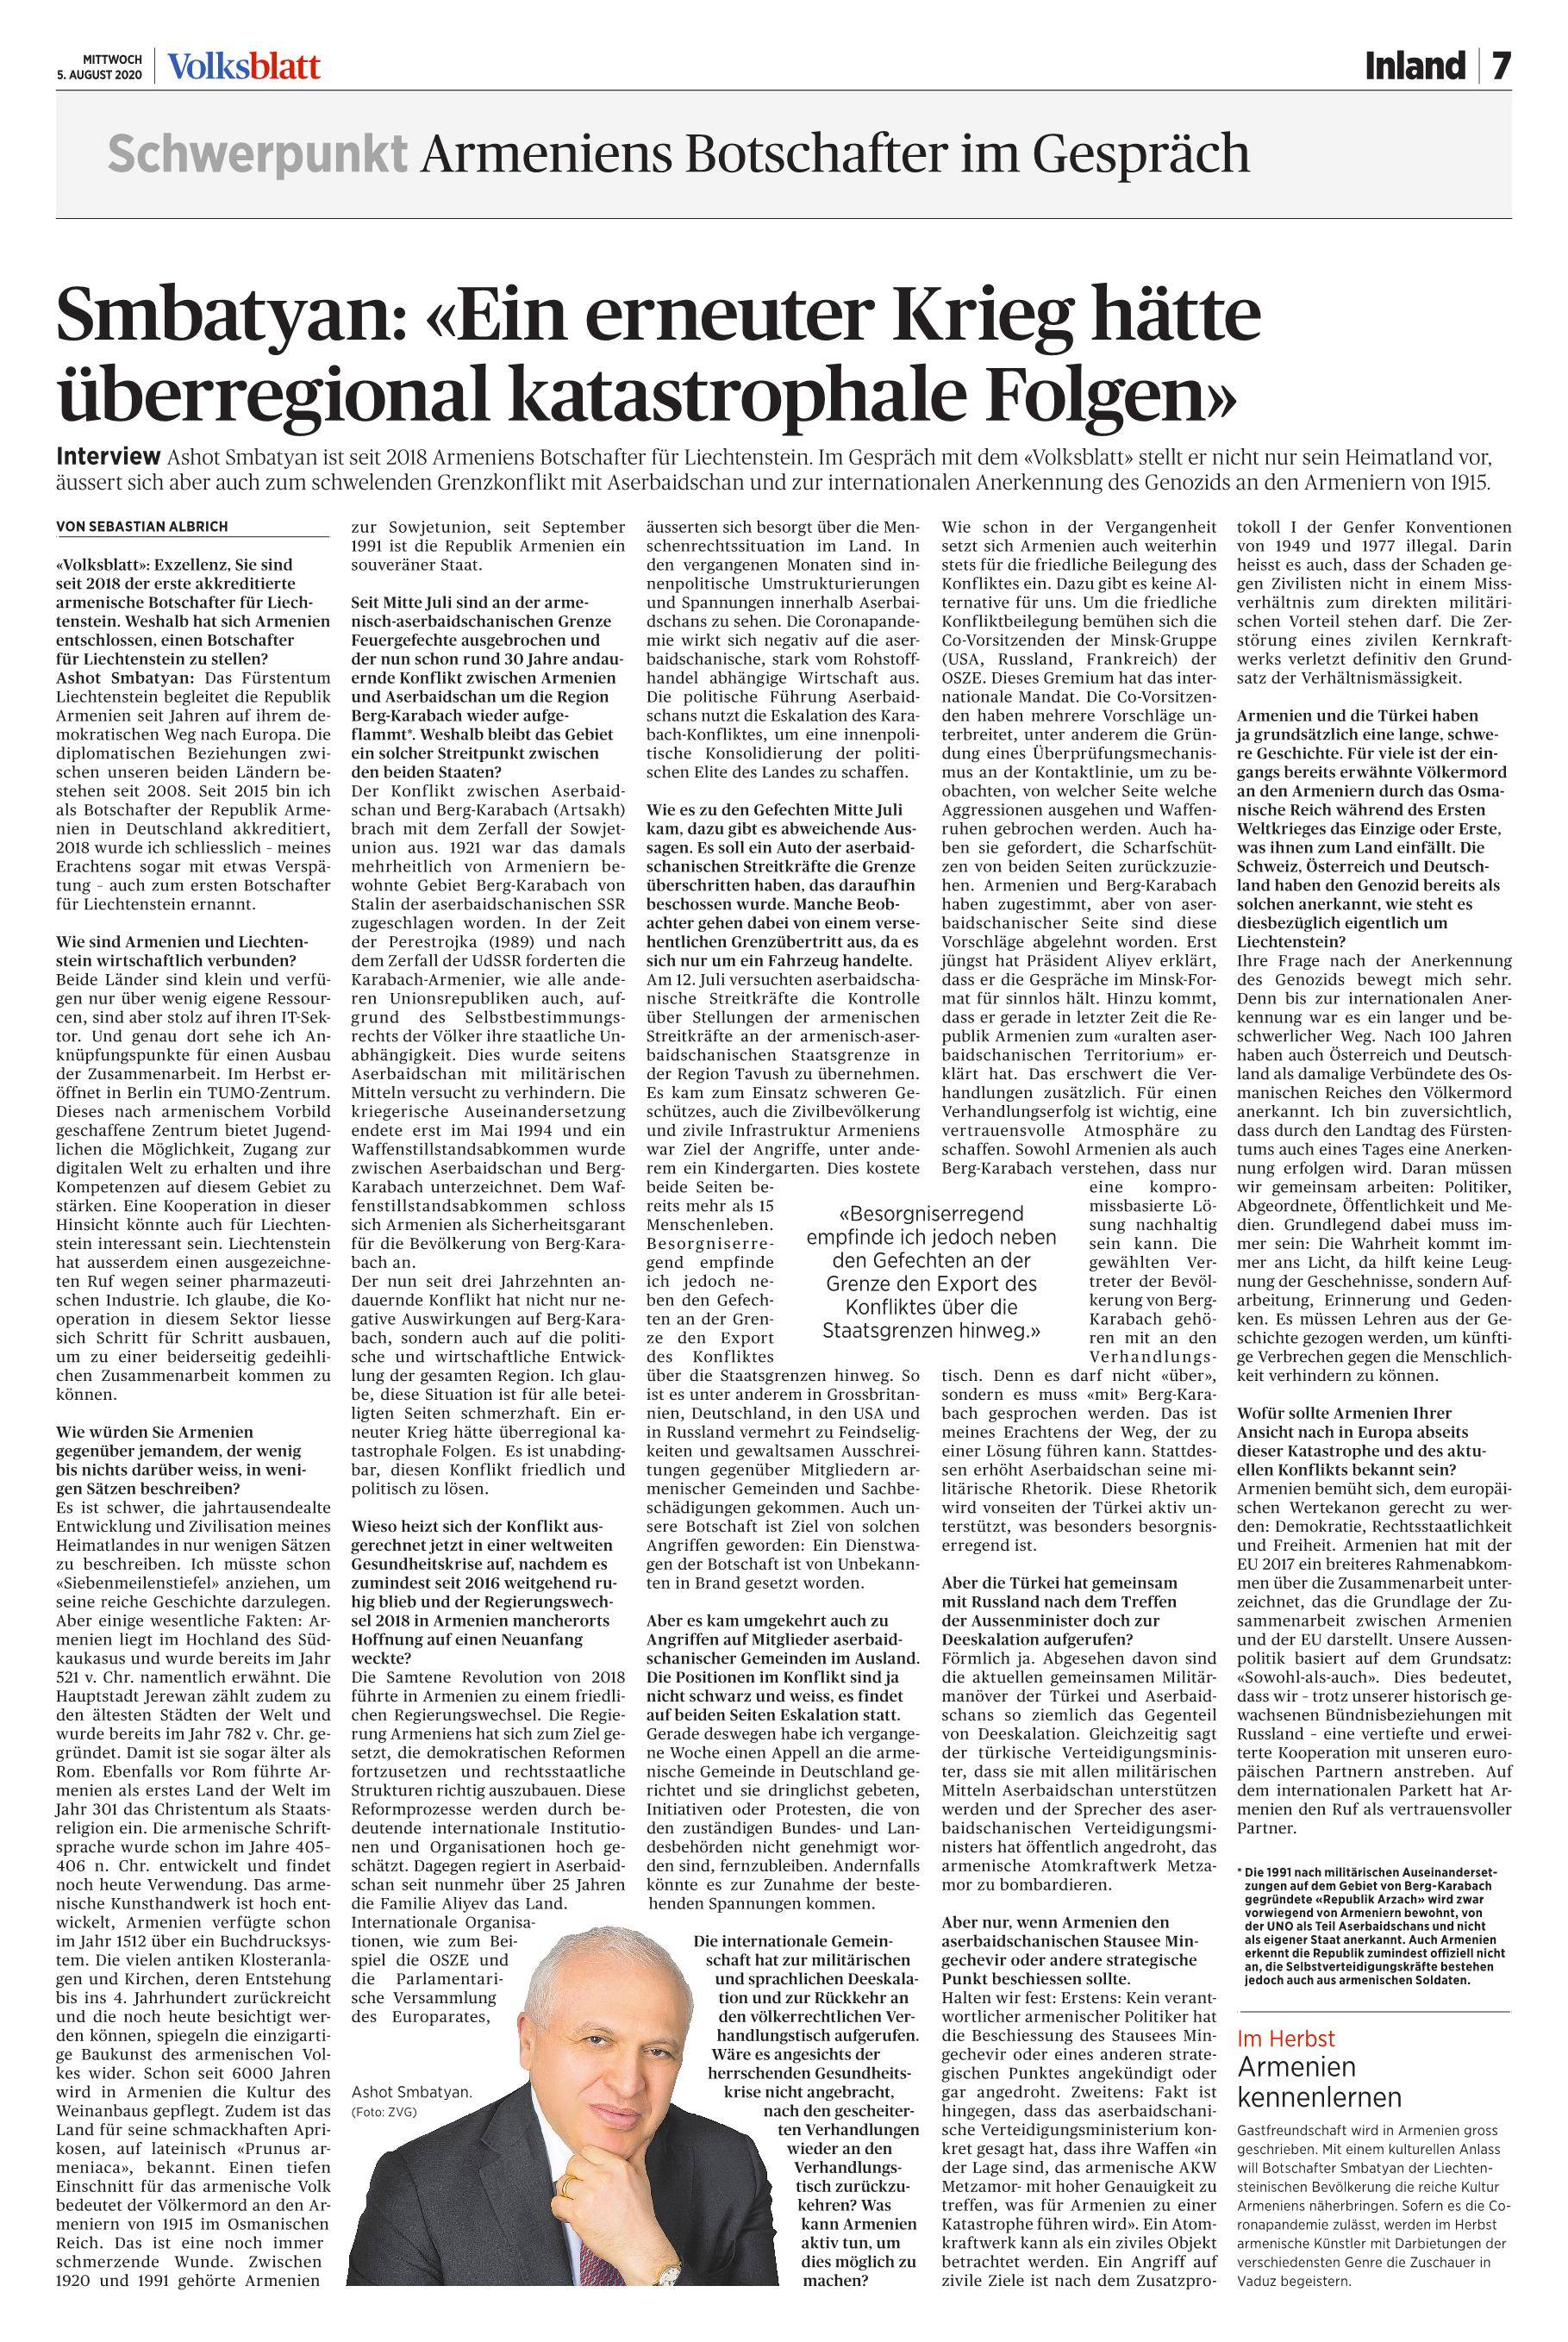 Interview des Botschafters der Republik Armenien in Liechtenstein an die Tageszeitung Volksblatt